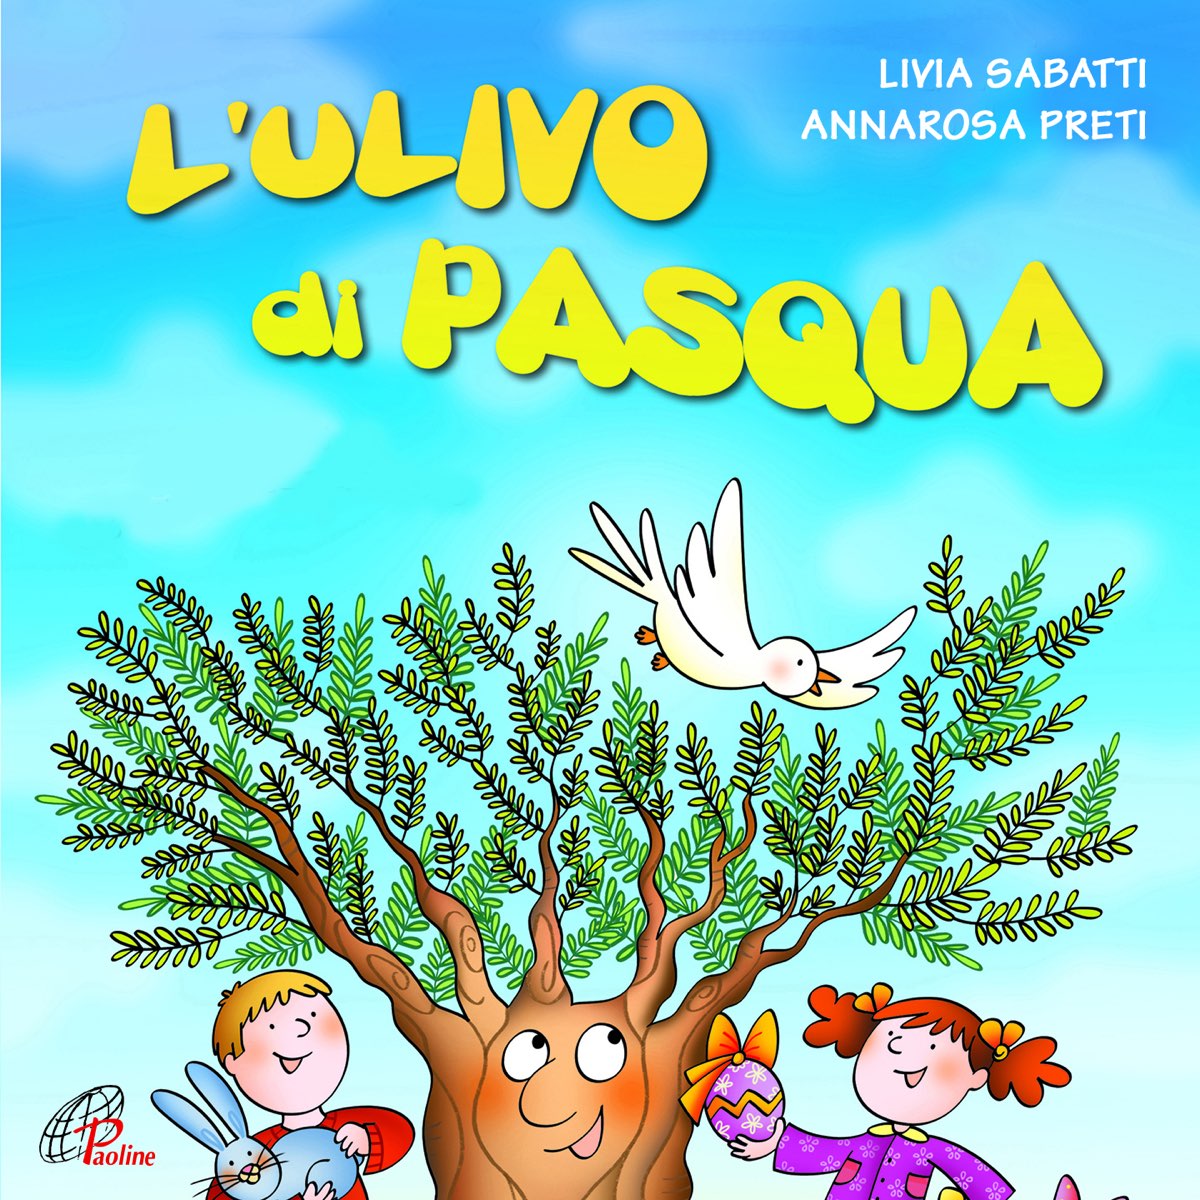 L'ulivo di Pasqua - Album di Livia Sabatti & Annarosa Preti - Apple Music